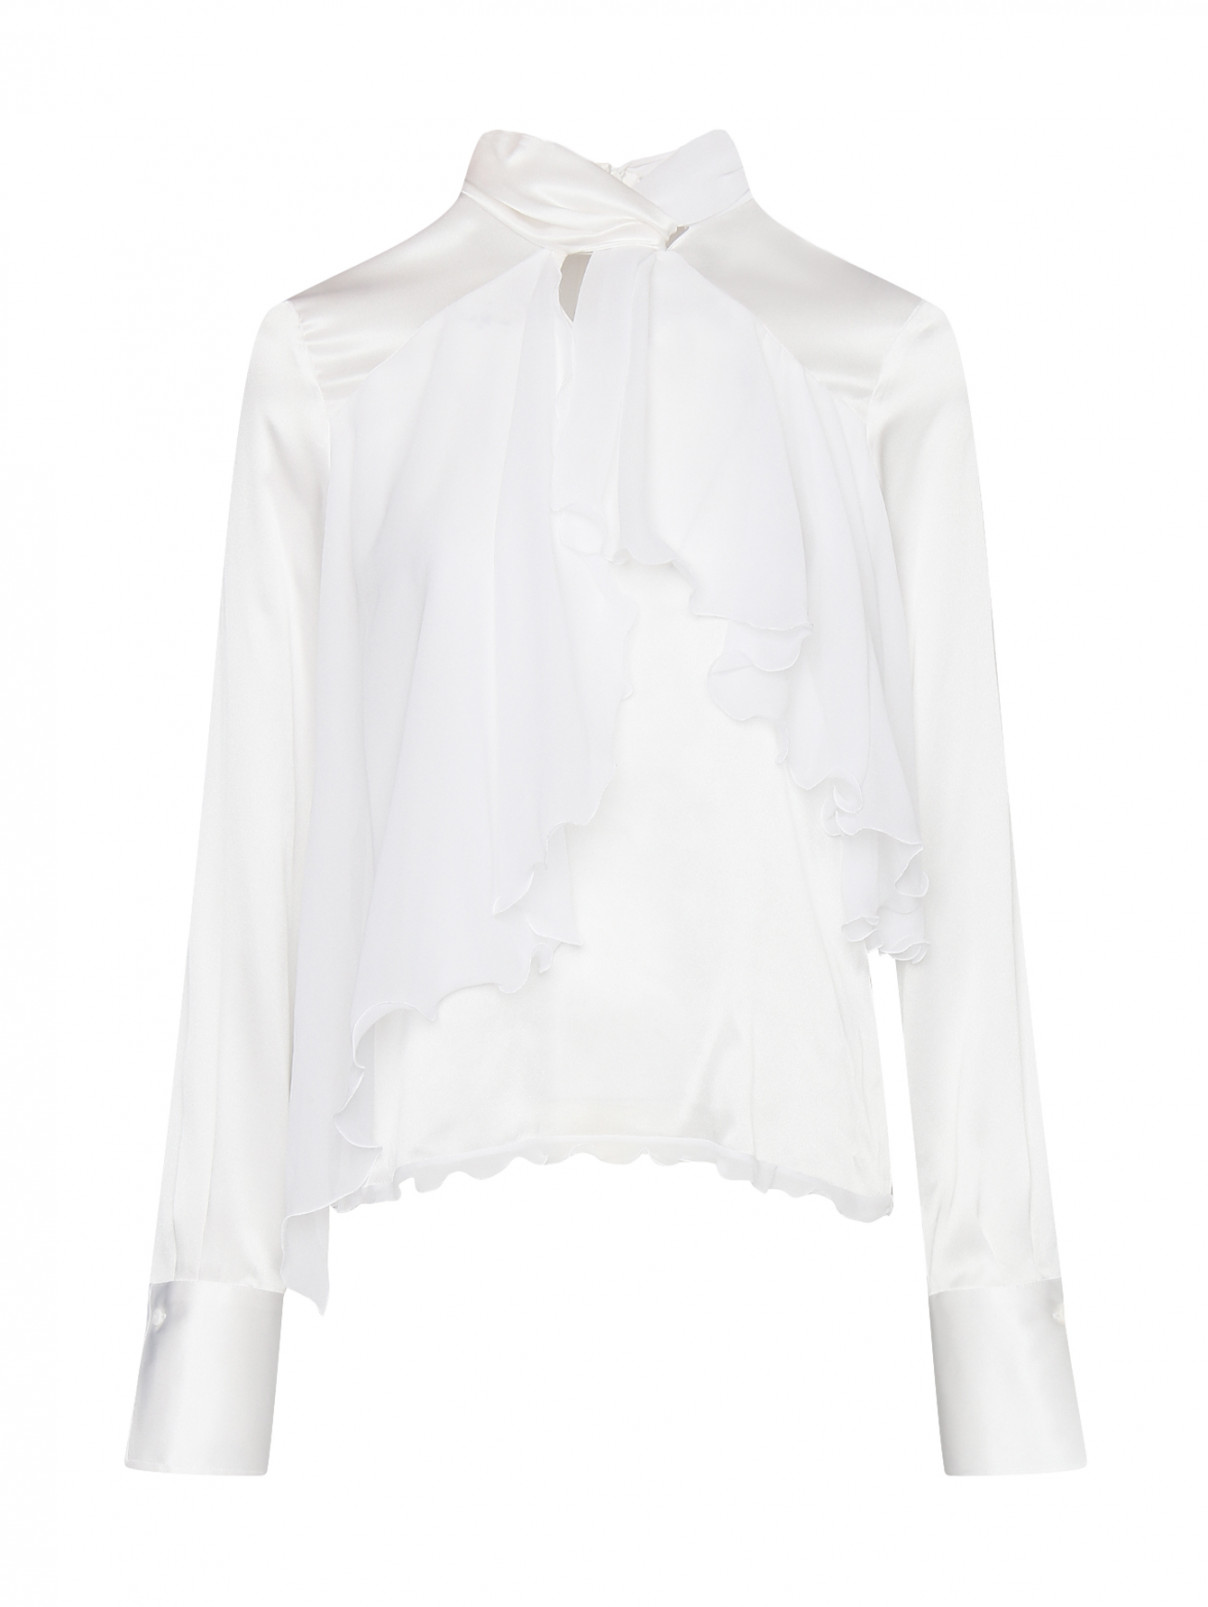 Шелковая блуза с воланом и увеличенными манжетами Ermanno Scervino  –  Общий вид  – Цвет:  Белый